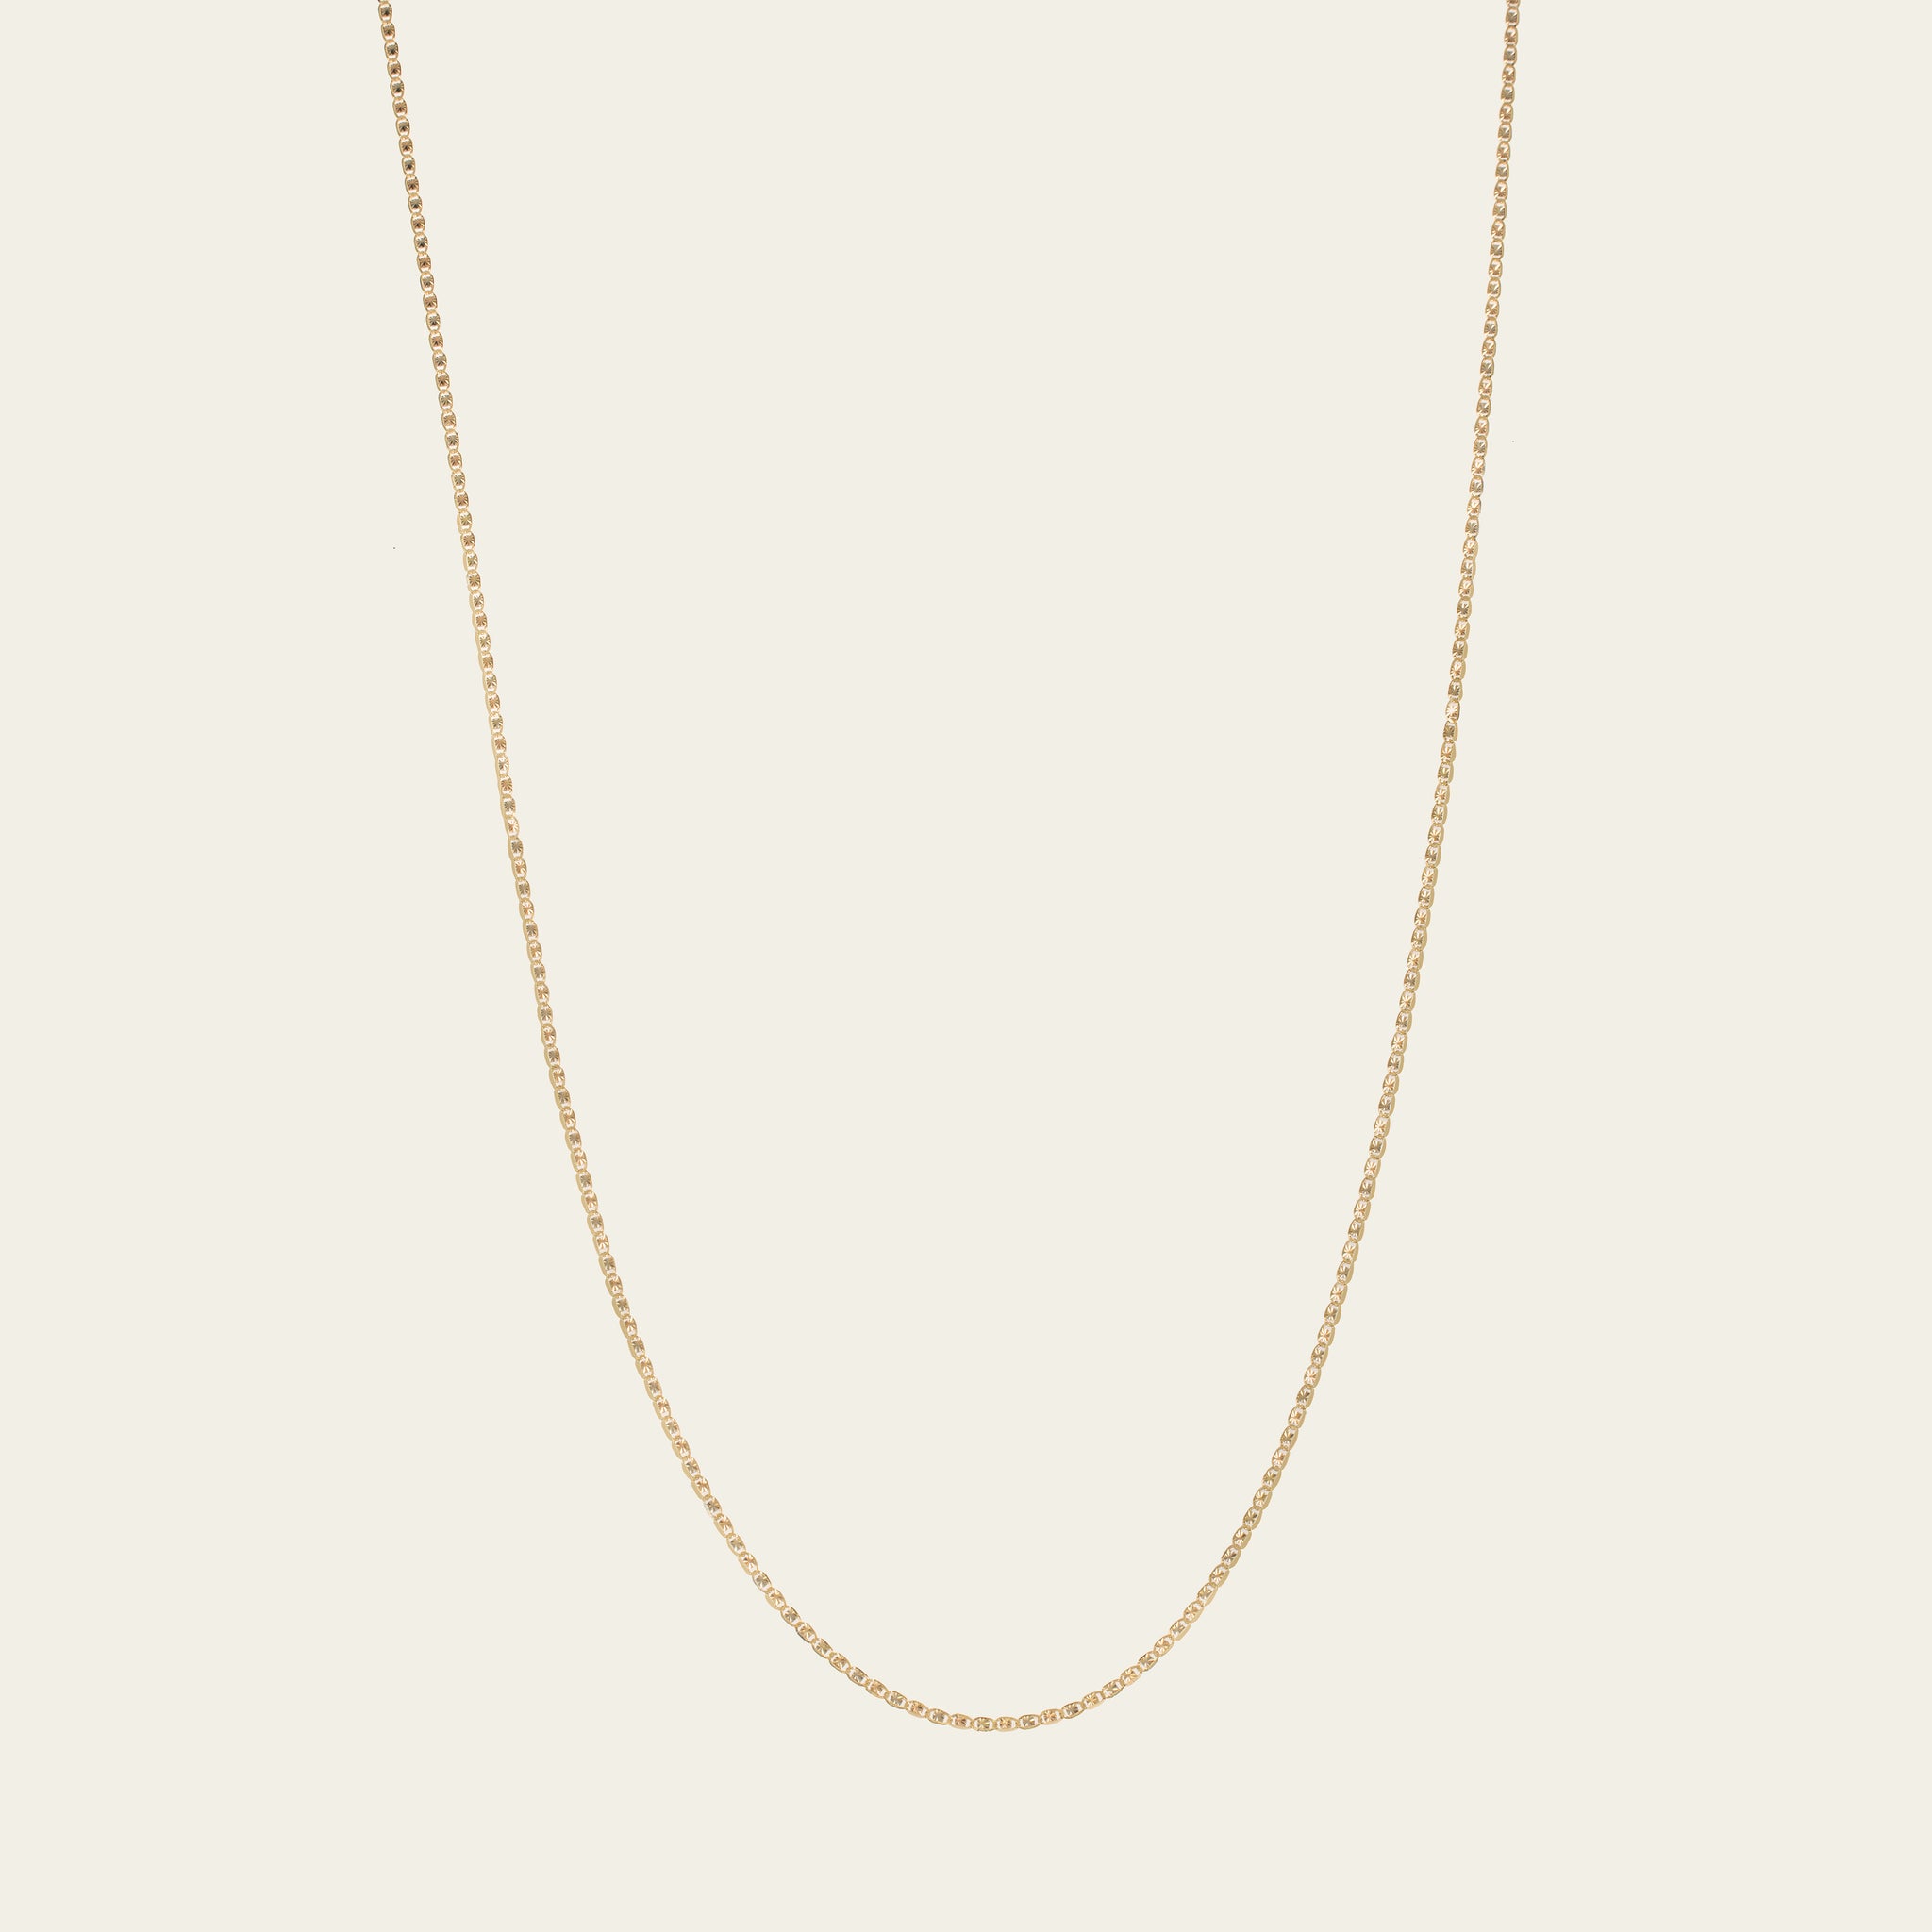 Valentino chain necklace